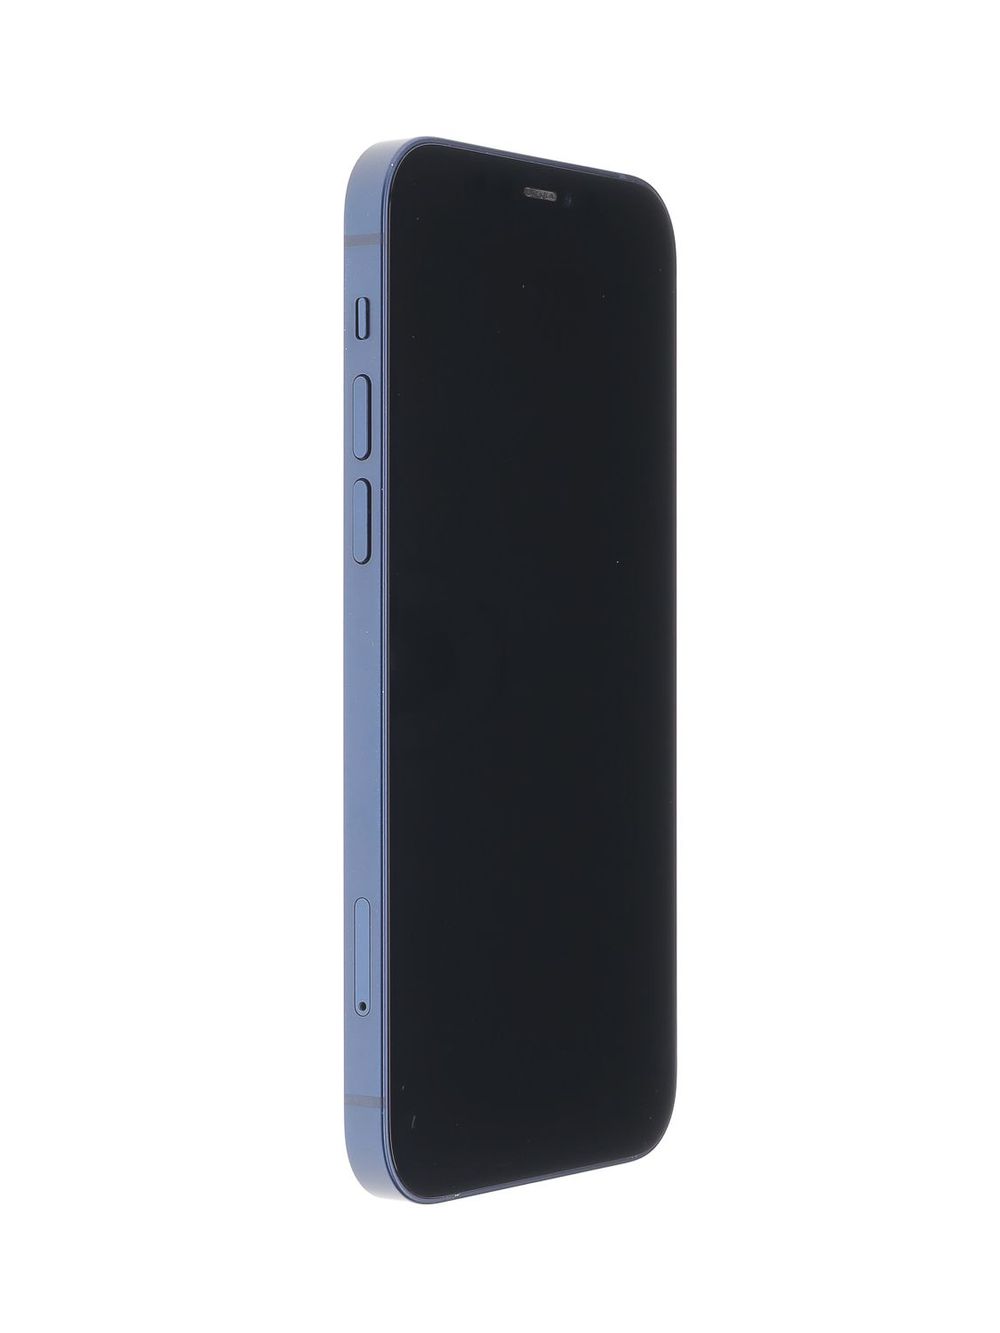 Мобилен телефон Apple iPhone 12, Blue, 64 GB, Excelent